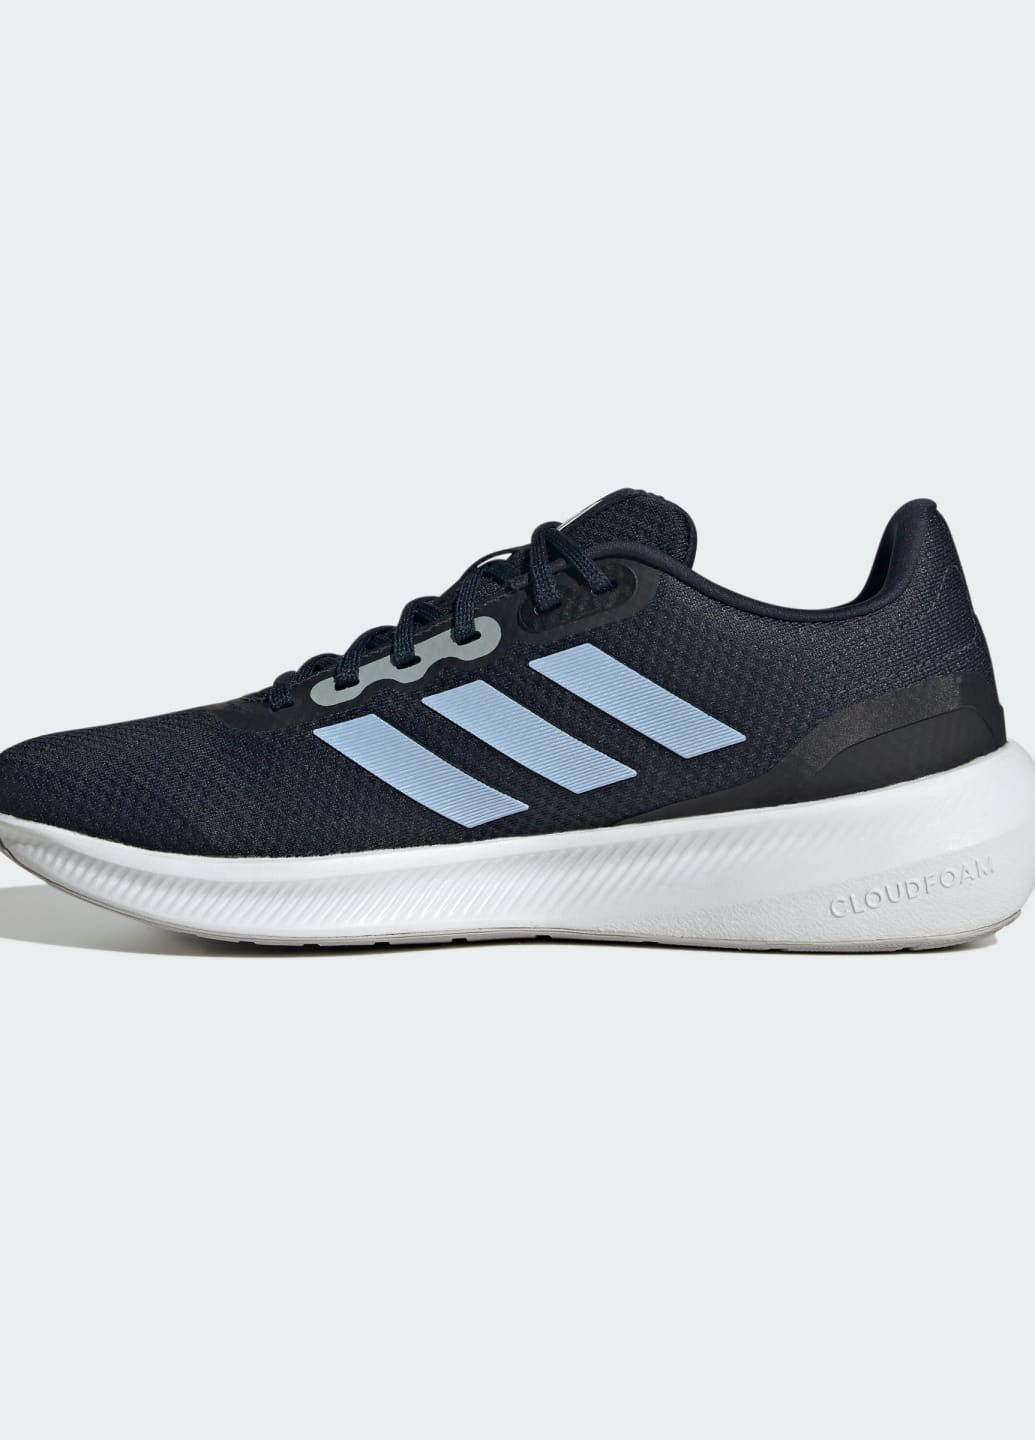 Синие всесезонные кроссовки runfalcon 3 adidas